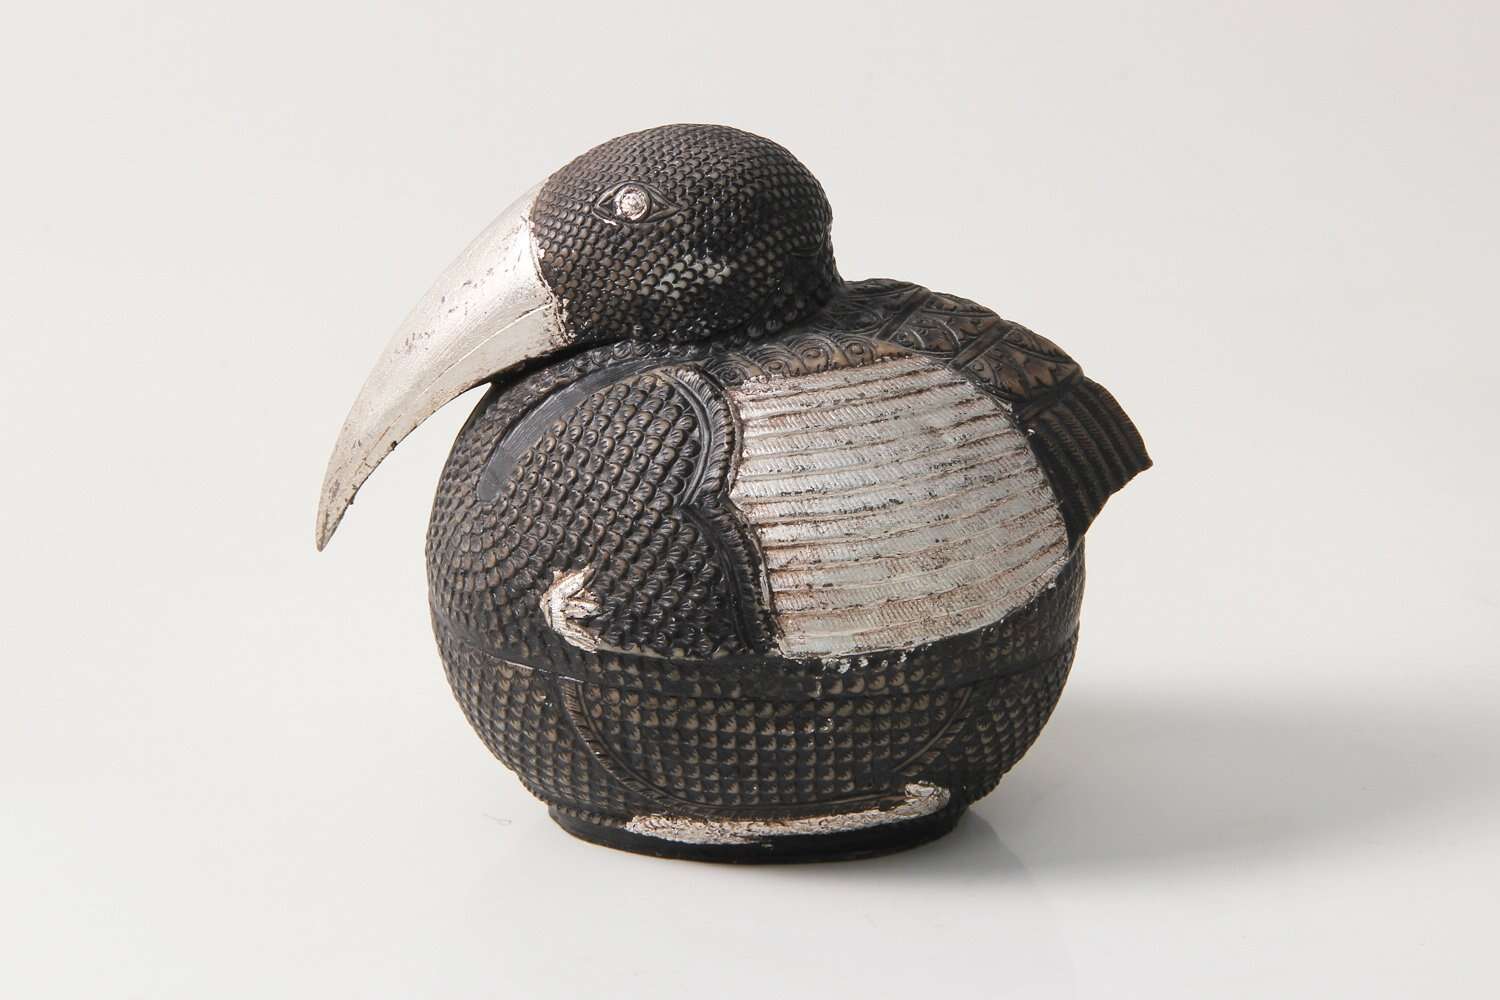 sculpture of a silver pelican bird gift present